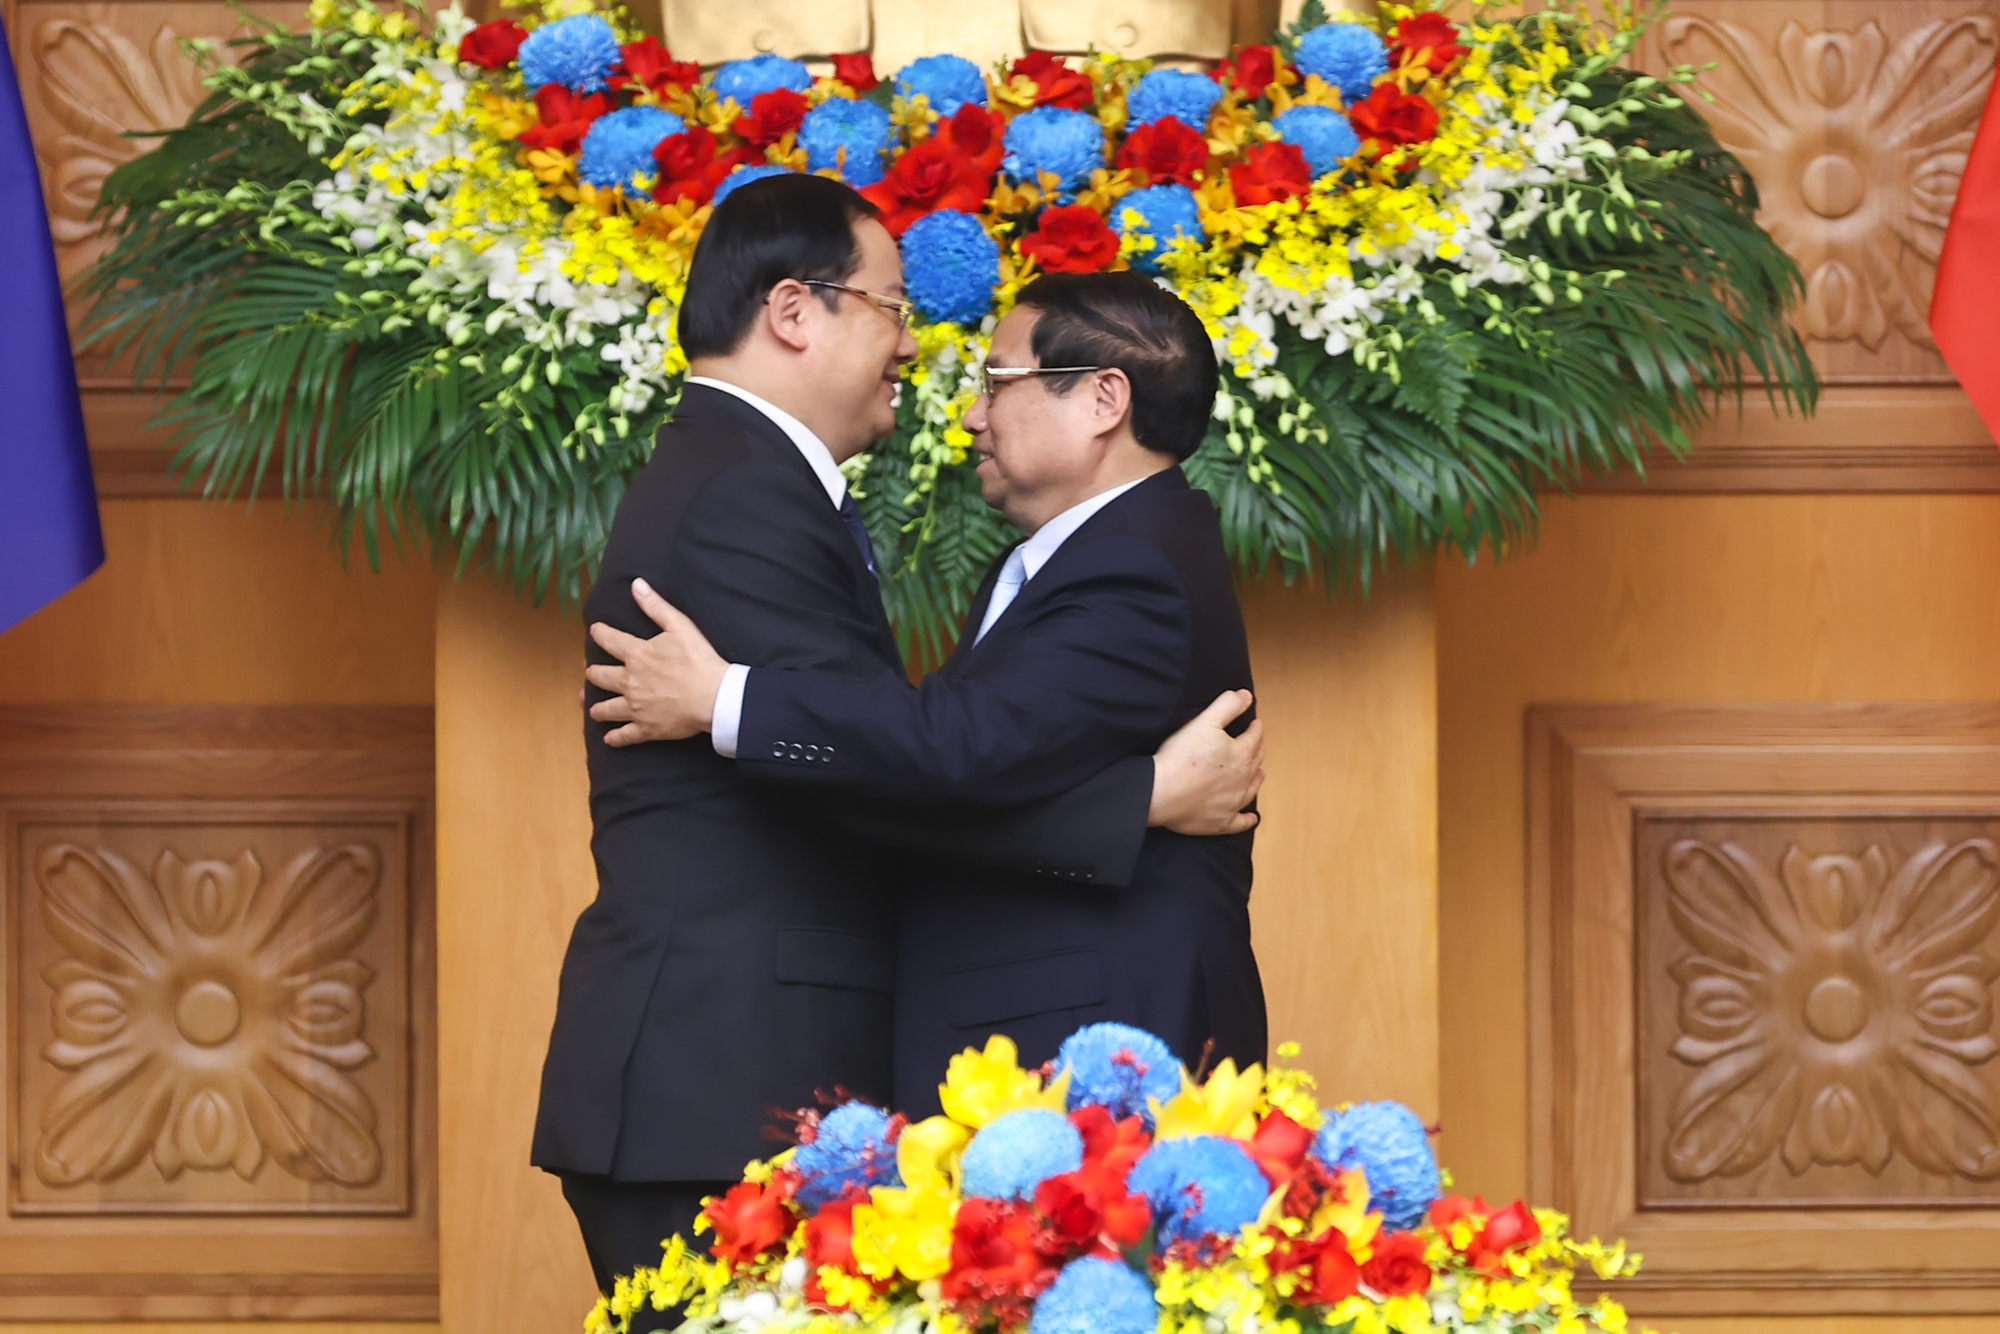 Thủ tướng Sonexay Siphandone cảm ơn sự đón tiếp nồng hậu và trọng thị của Chính phủ và nhân dân Việt Nam dành cho Đoàn đại biểu cấp cao Chính phủ Lào - Ảnh: VGP/Nhật Bắc